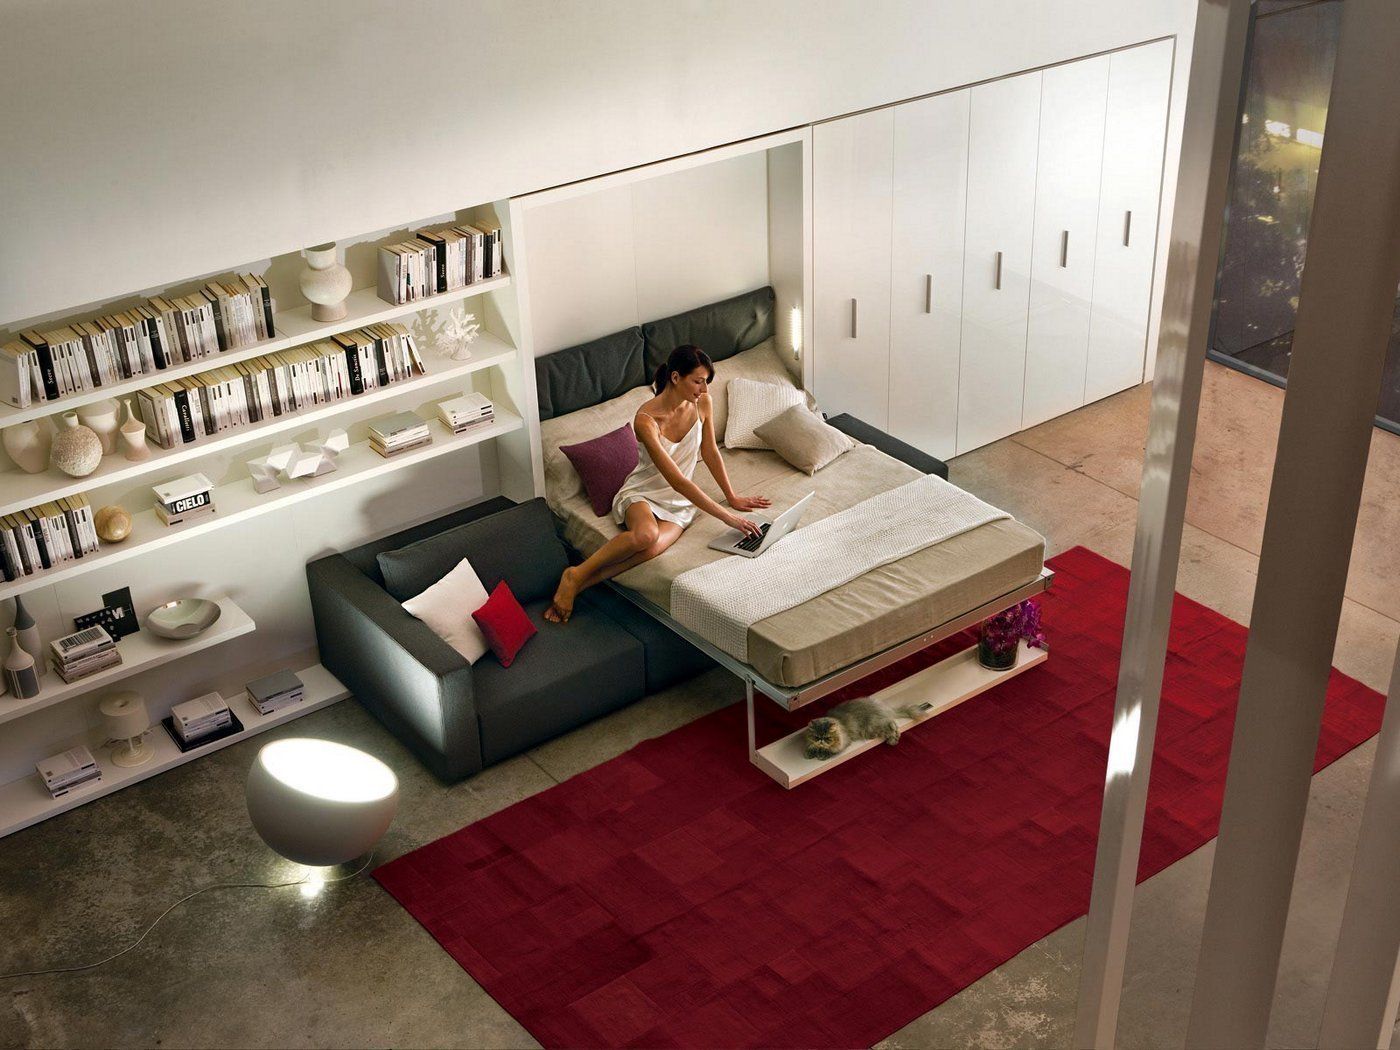 Cama abatible para estudio,apartamento o loft Mobiliario Xikara Livings de estilo minimalista